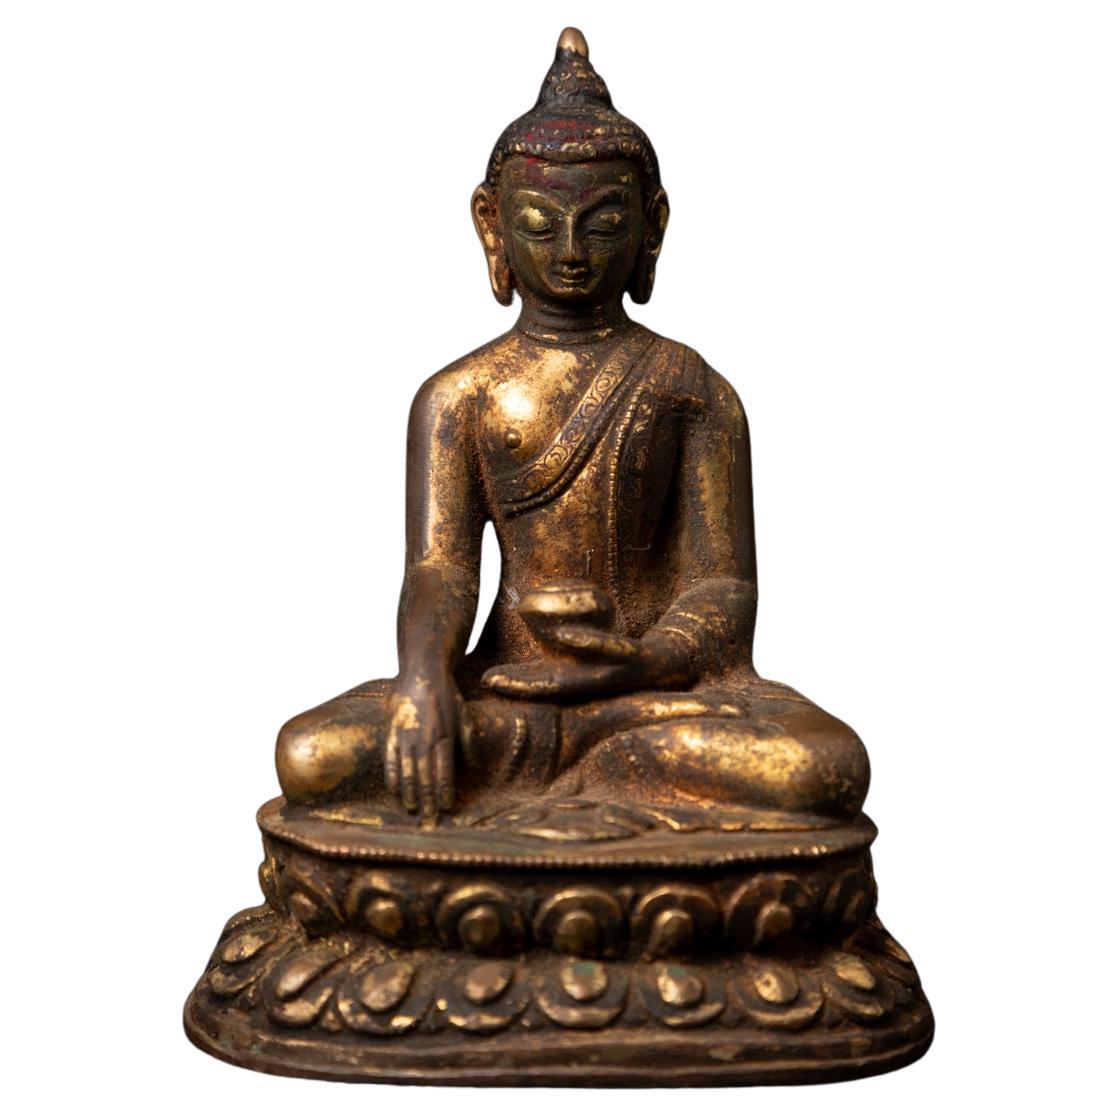 19th century antique bronze Nepali Buddha statue in Bhumisparsha Mudra